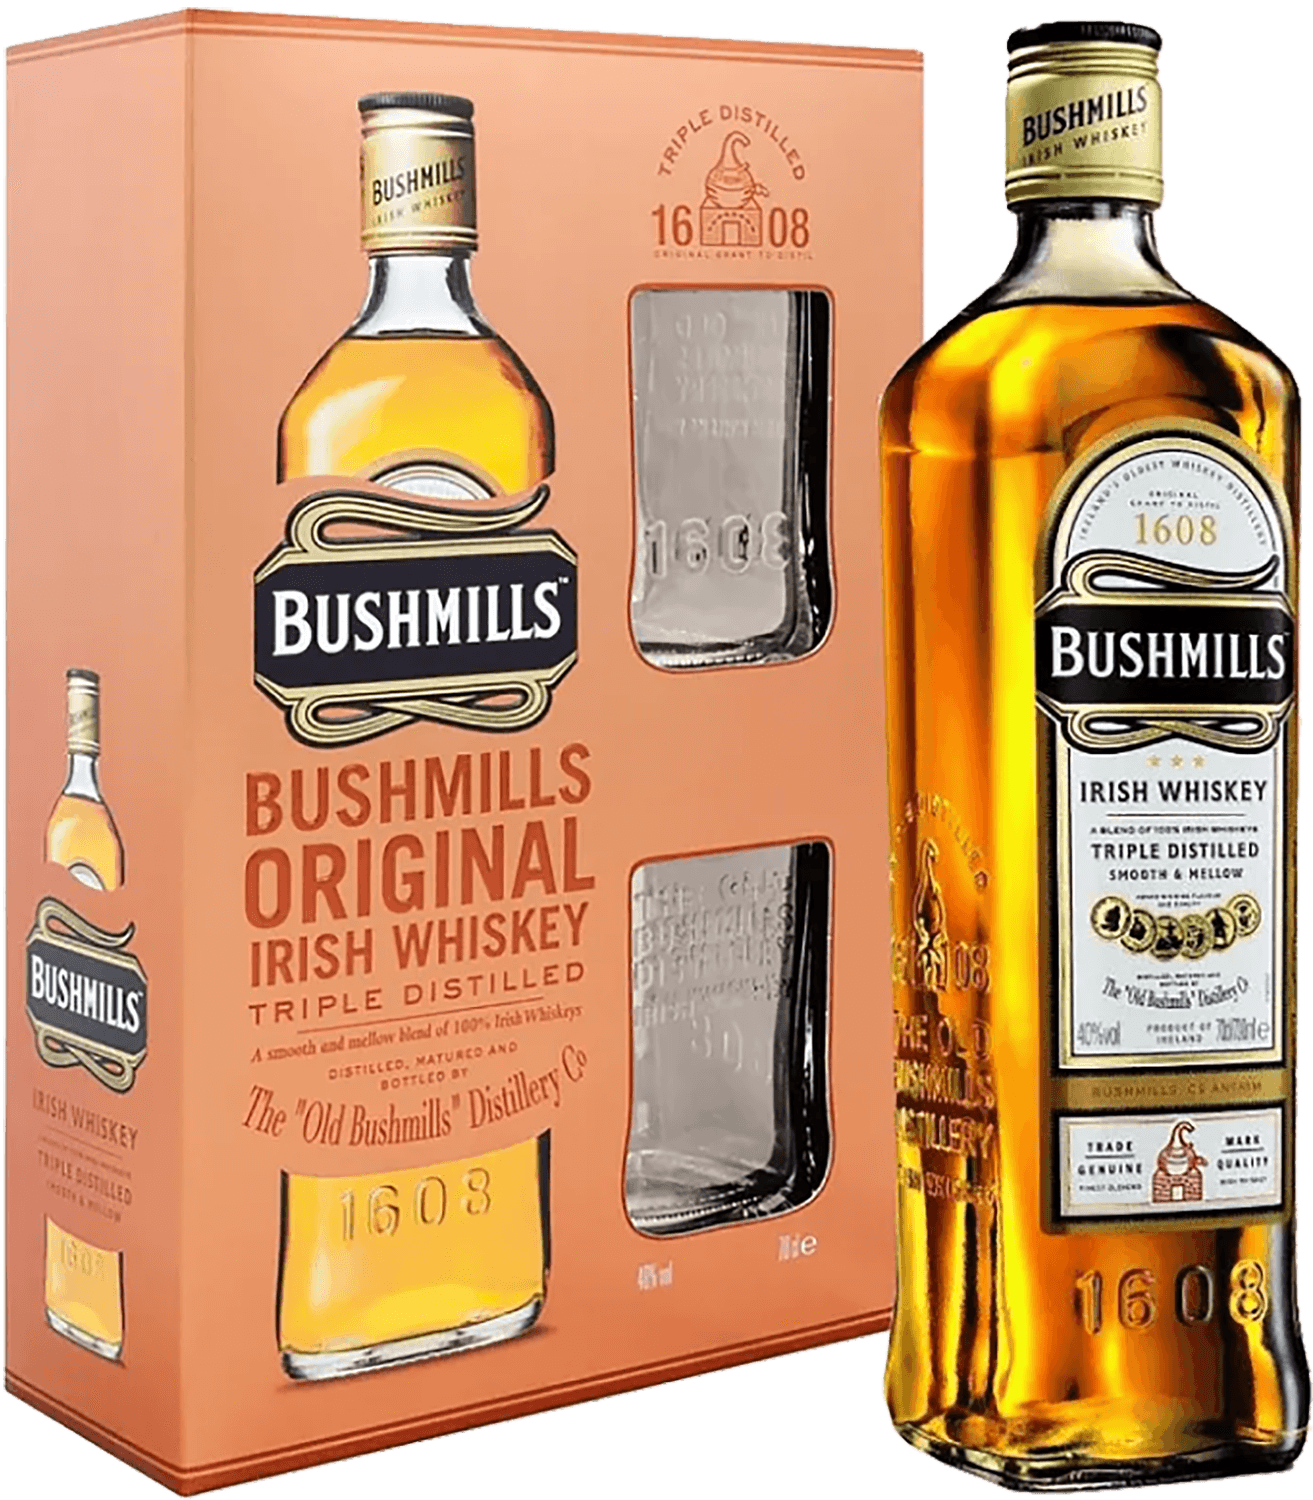 baileys original irish cream gift box Bushmills Original Blended Irish Whiskey (gift box with 2 glasses)